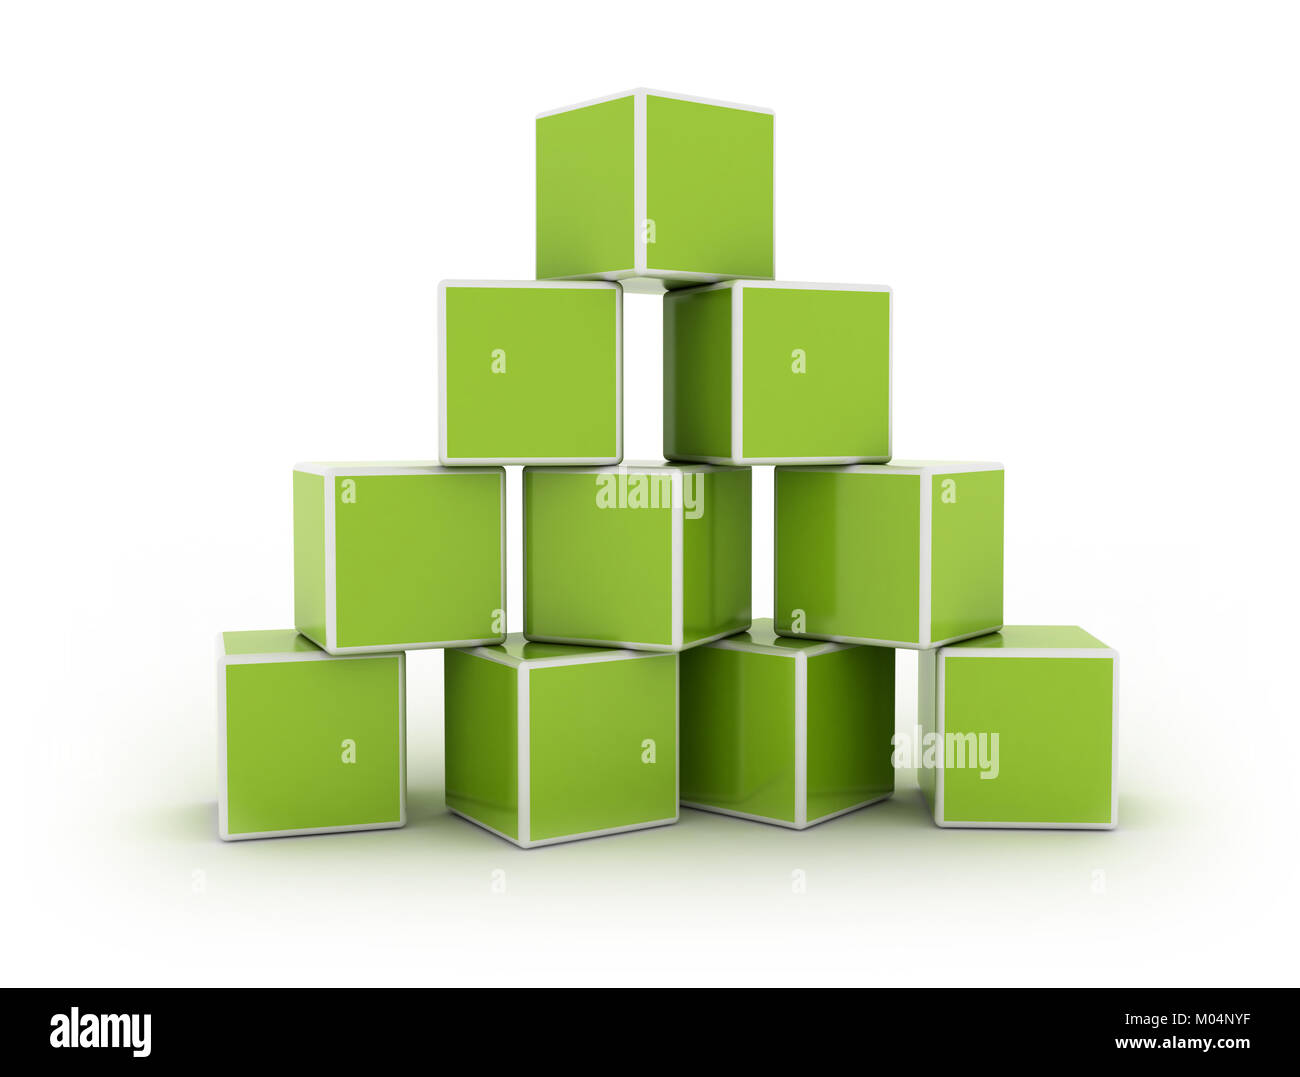 Les cases vertes empilés en pyramide Banque D'Images